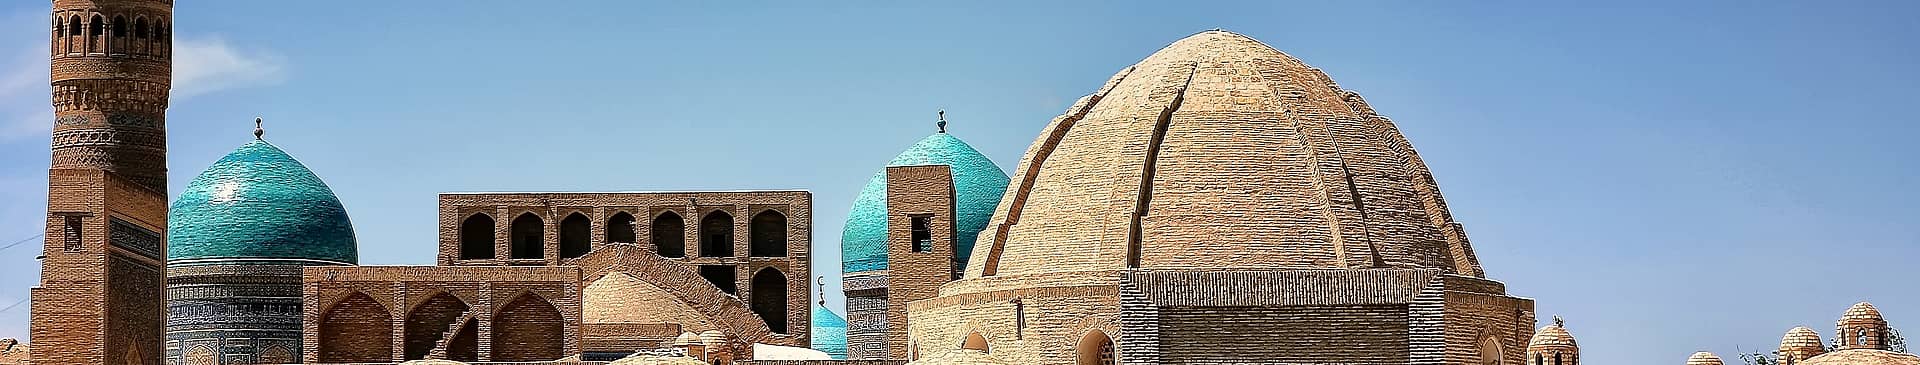 Uzbekistan in August